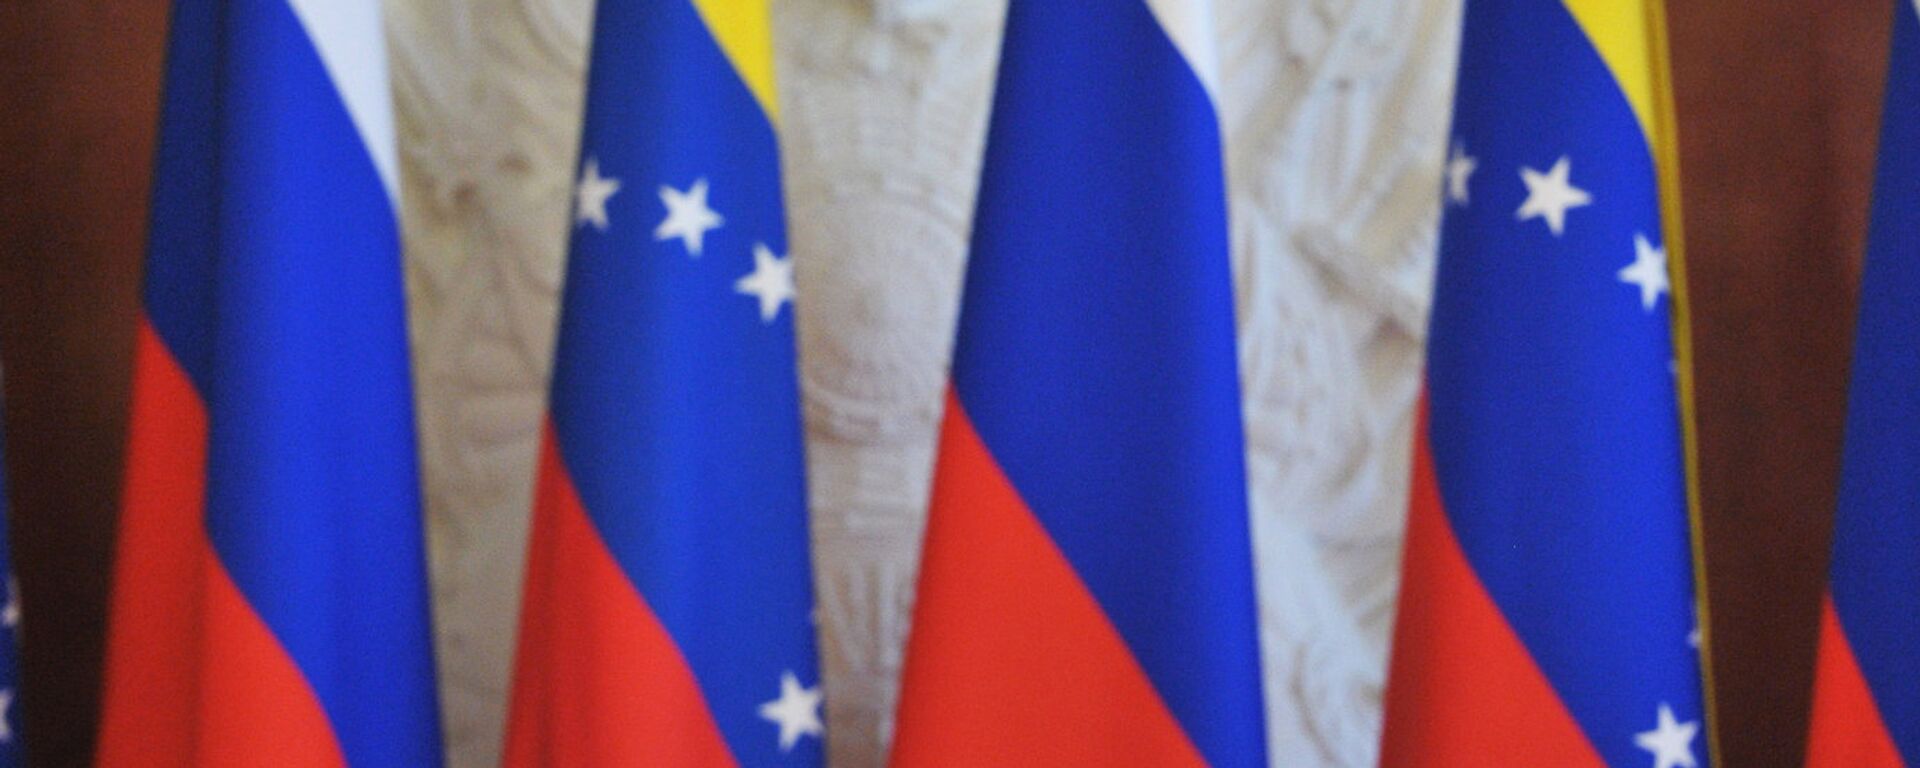 Las banderas de Rusia y Venezuela - Sputnik Mundo, 1920, 21.06.2022